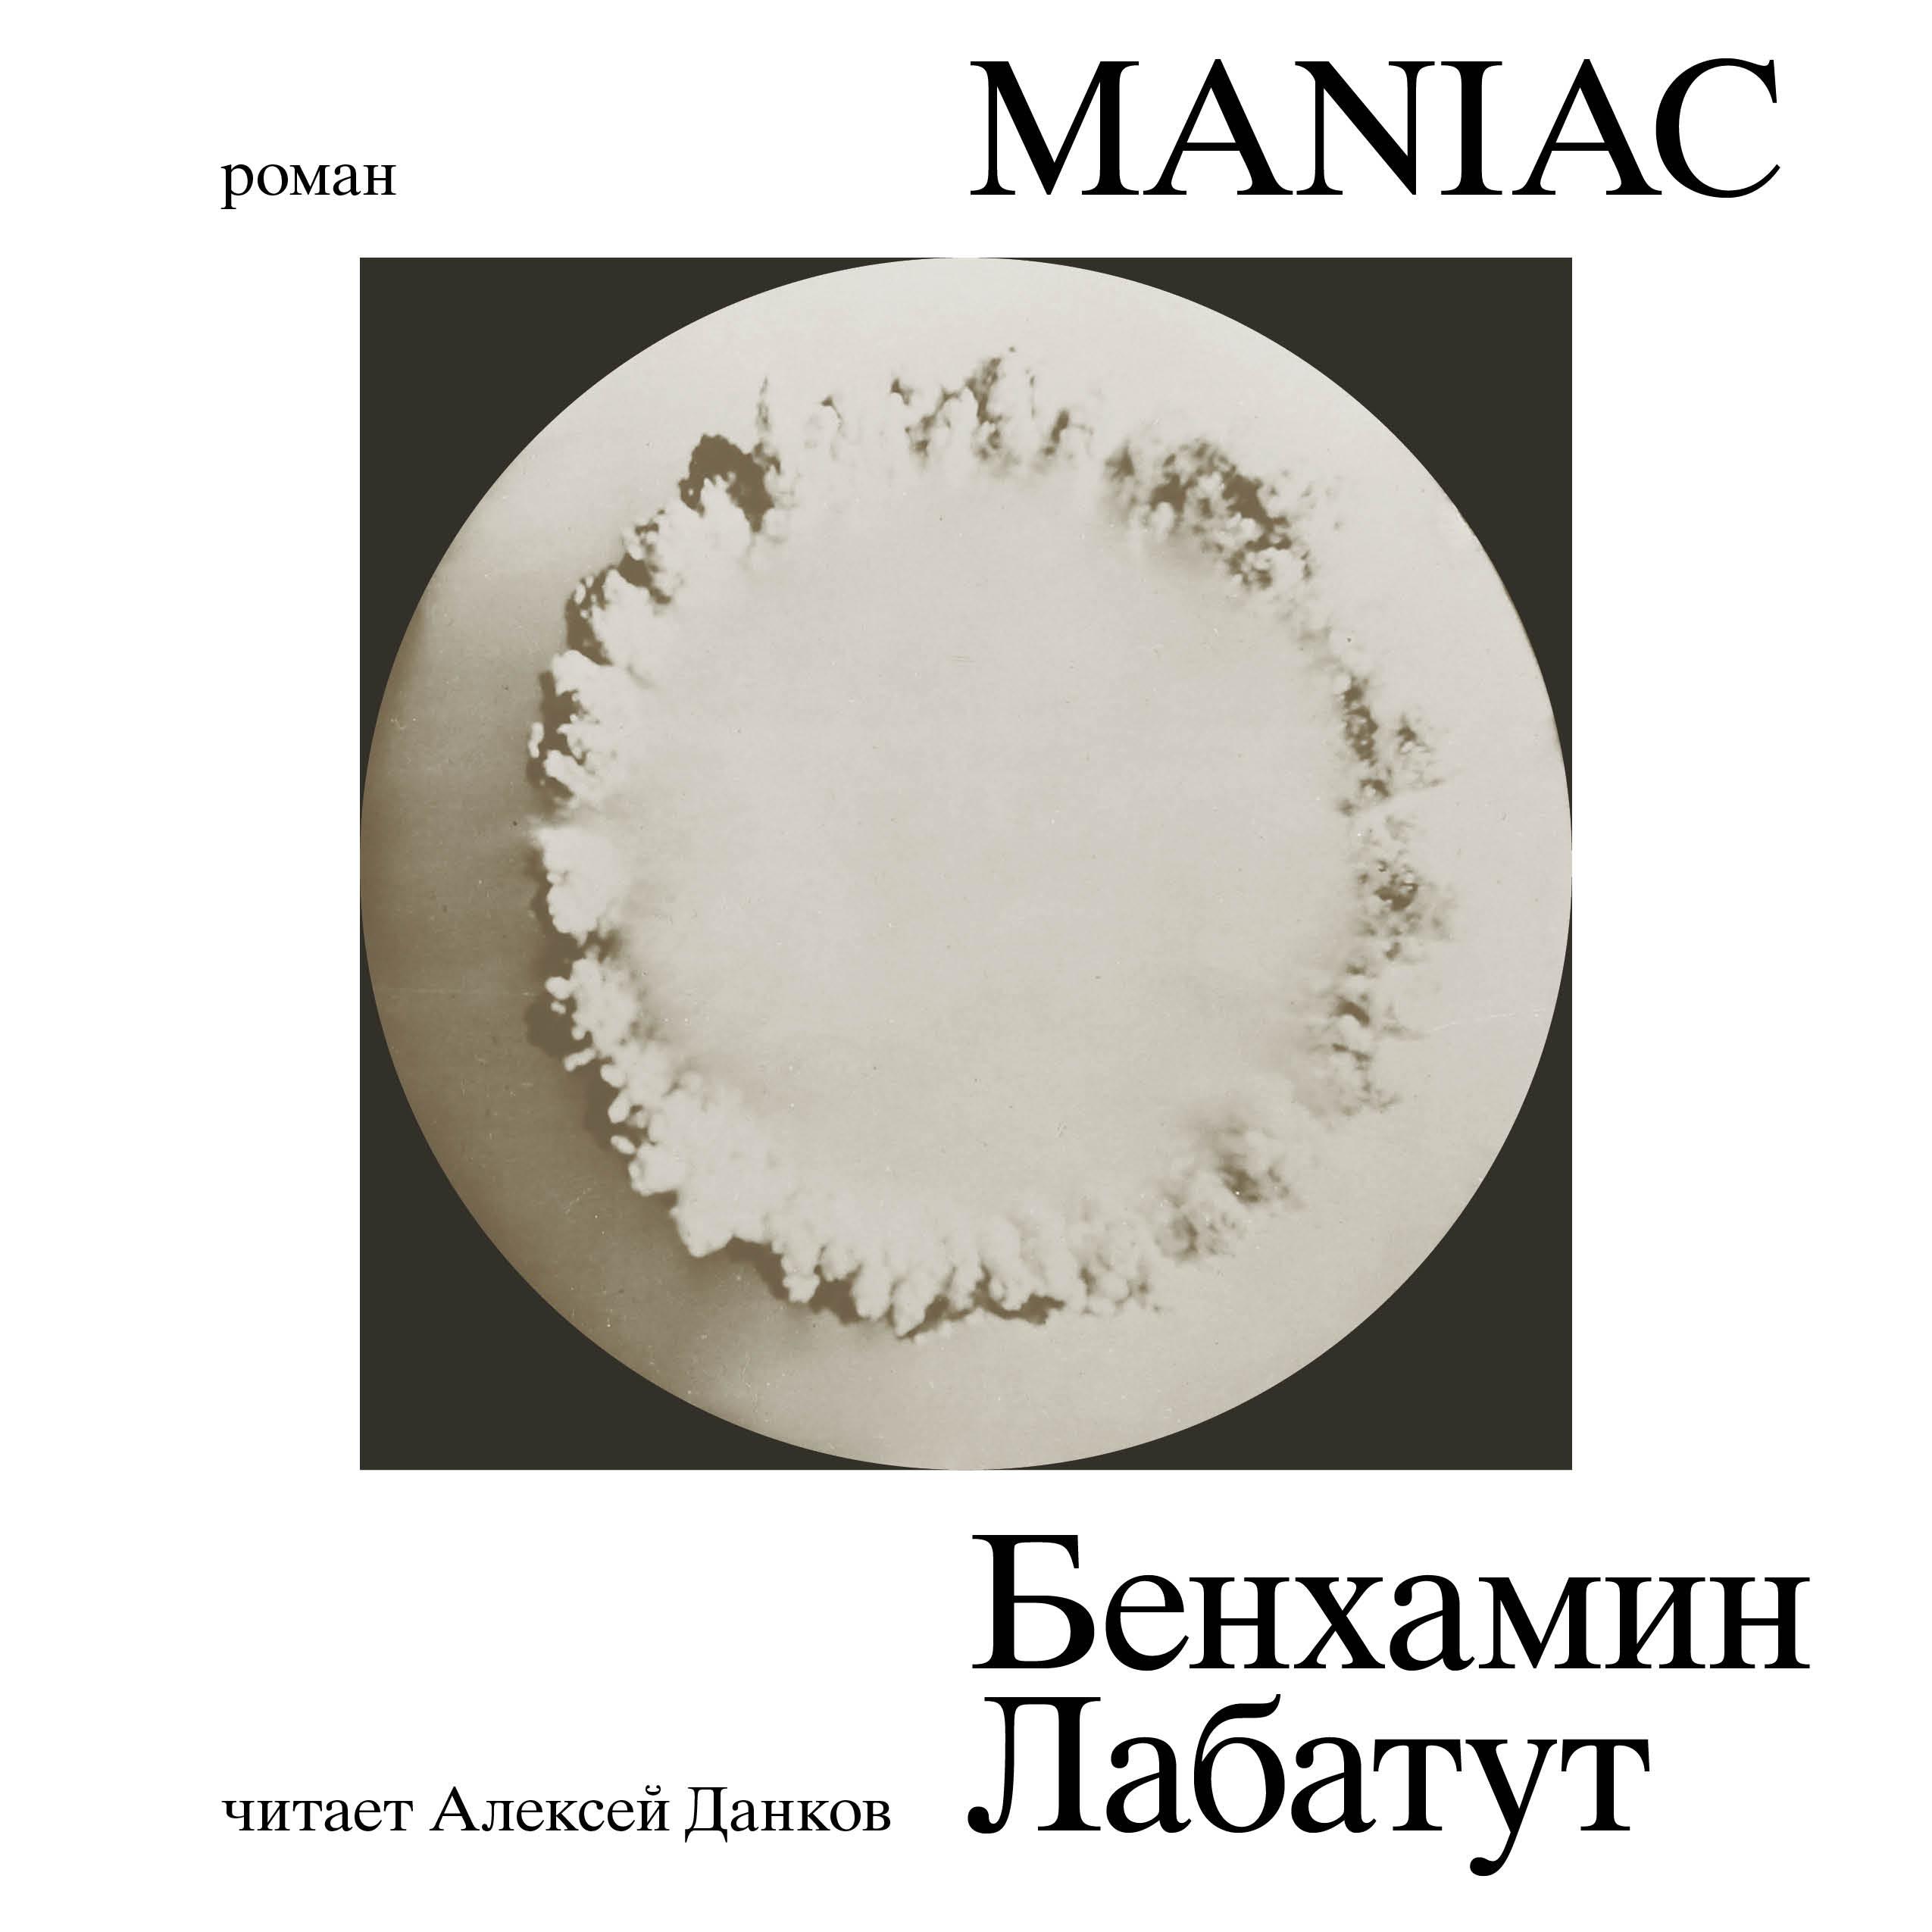 У писателя Бенхамина Лабатута вышел роман «MANIAC». MAXIM публикует эксклюзивный отрывок